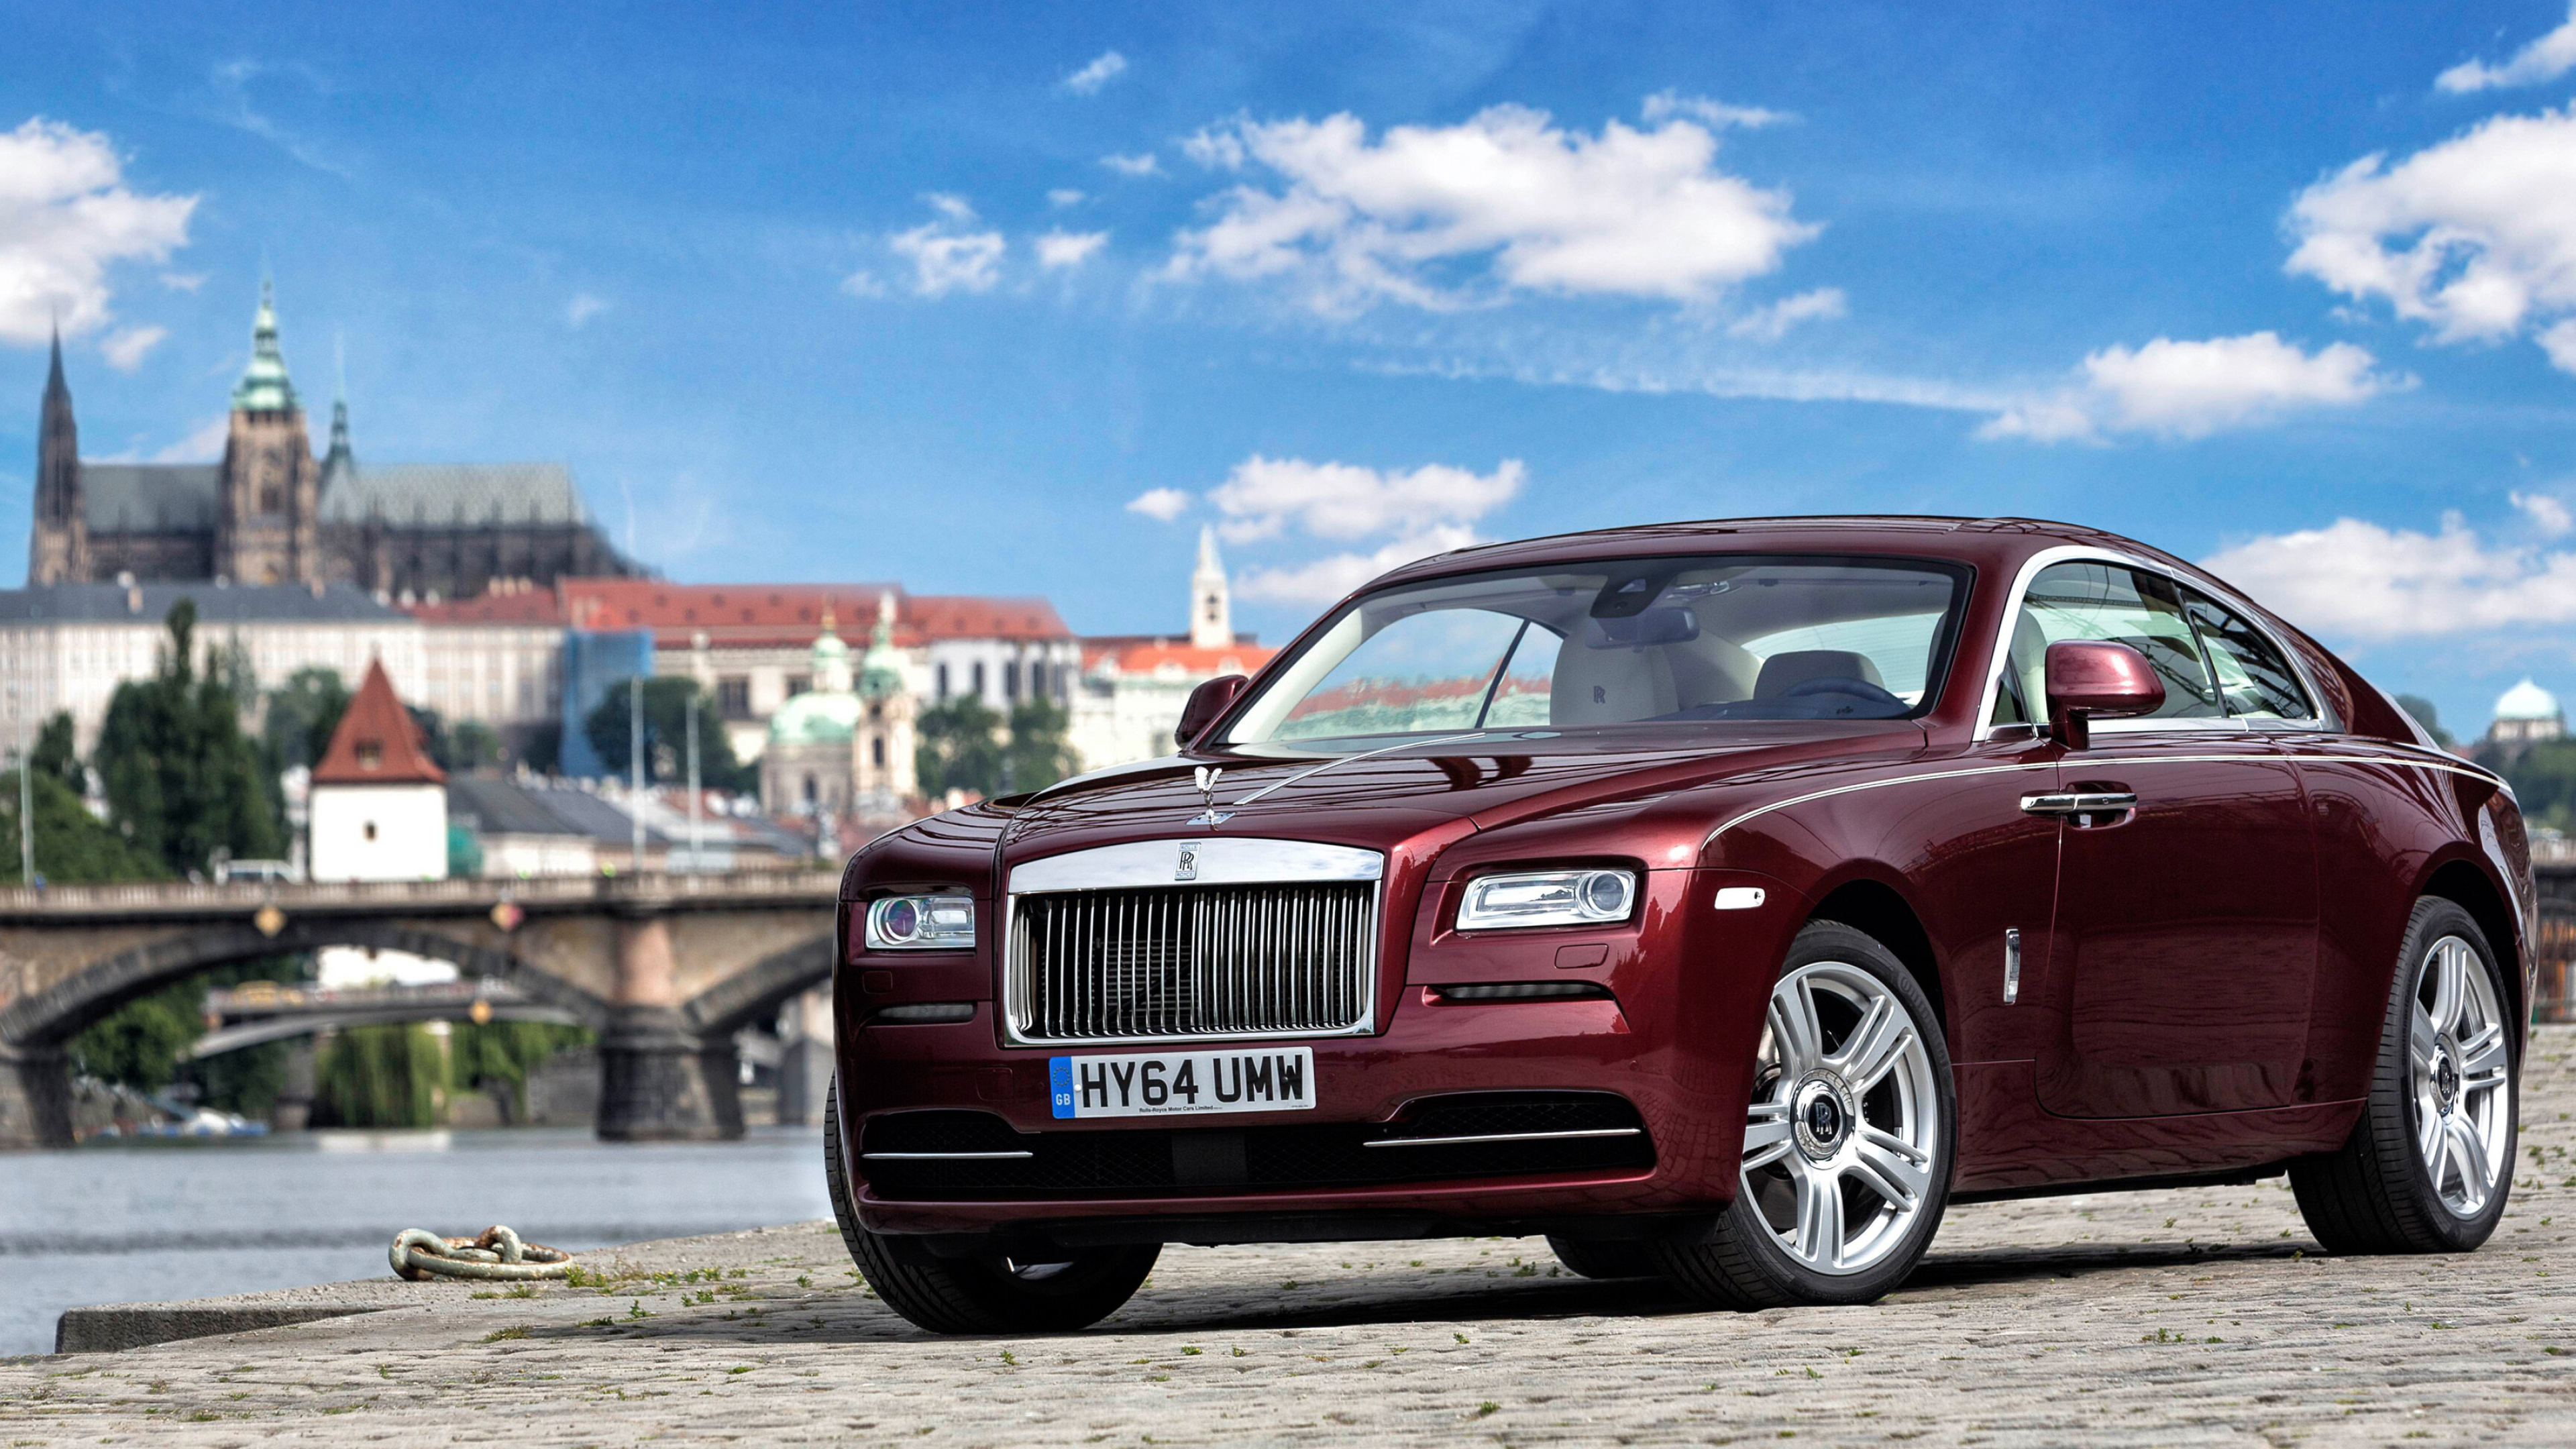 Rolls-Royce: Model Wraith, A full-size luxury car/grand tourer. 3840x2160 4K Wallpaper.